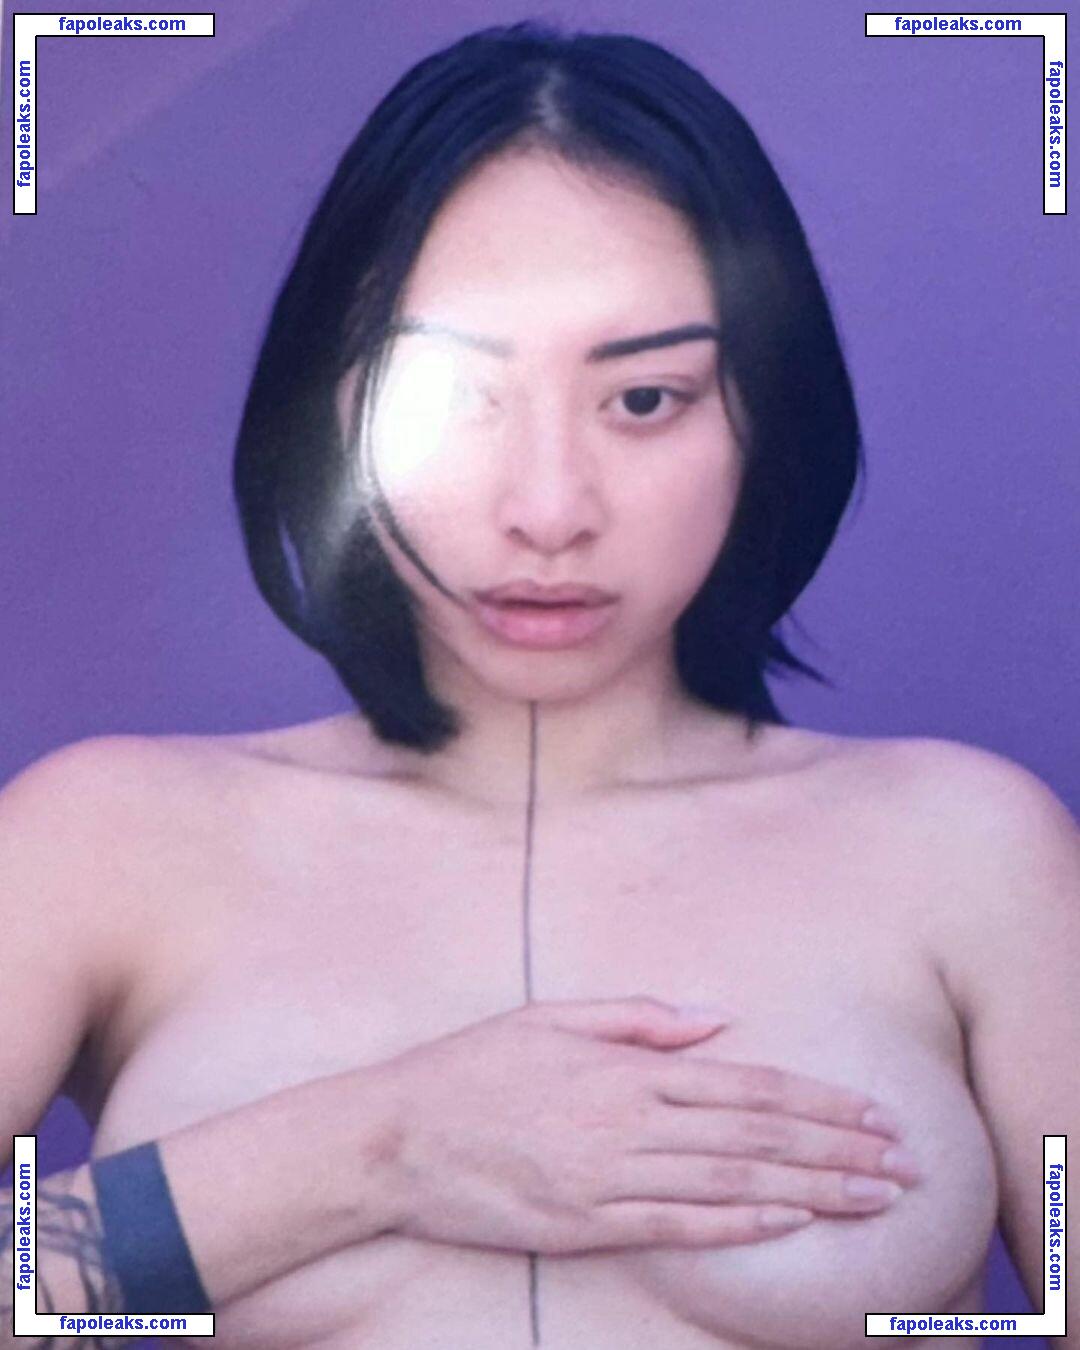 Dieu Linh Vuong / Dieu_lin_vuong / Dieulinvuong / Helltish nude photo #0044 from OnlyFans